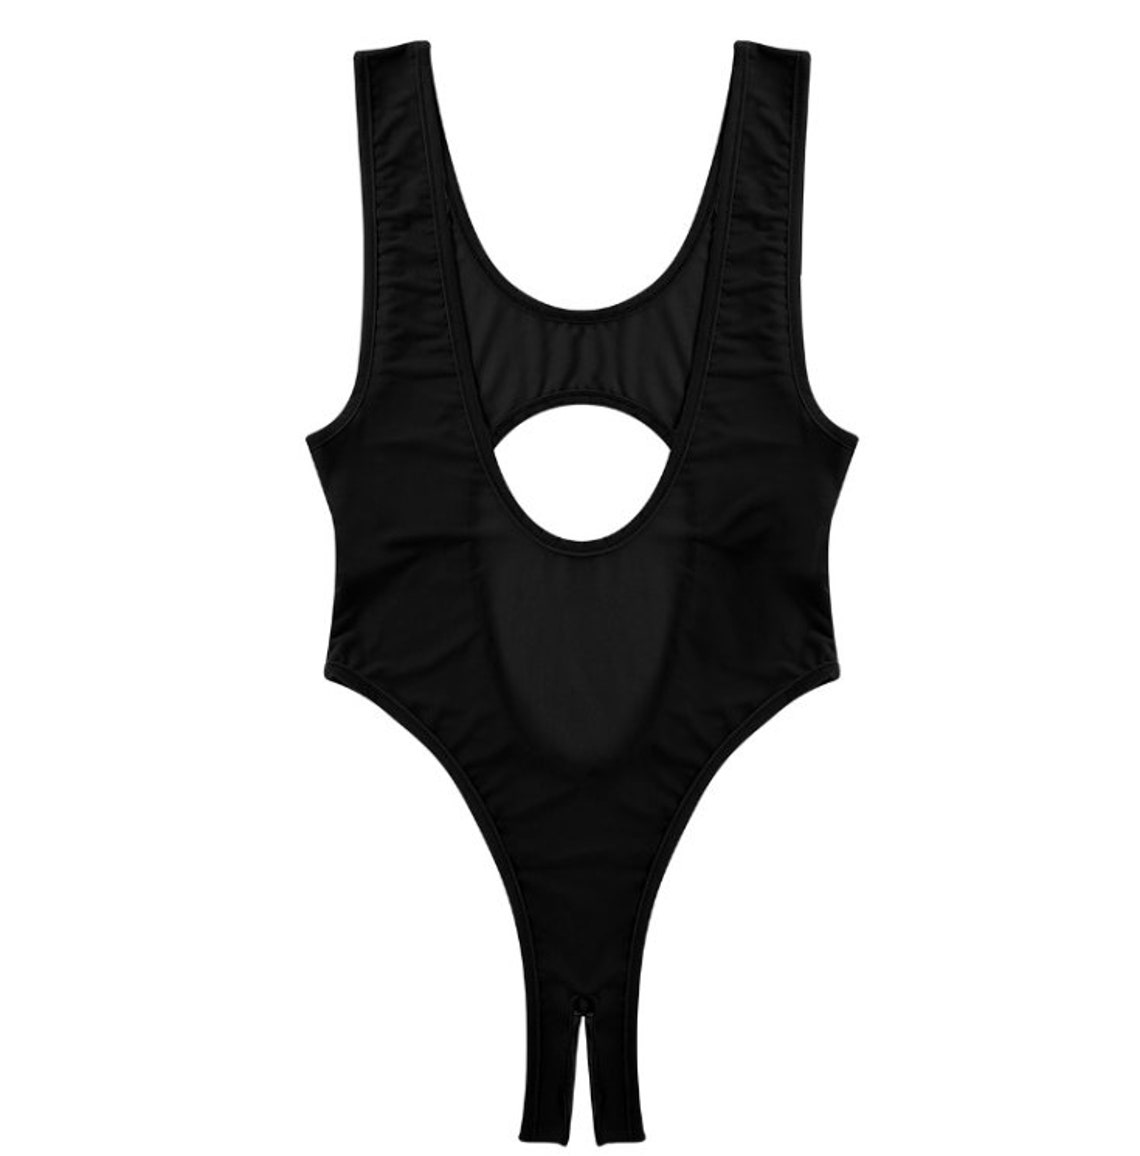 Crotchless Lingerie Crotchless Bodysuit Crotchless Bikini | Etsy New ...